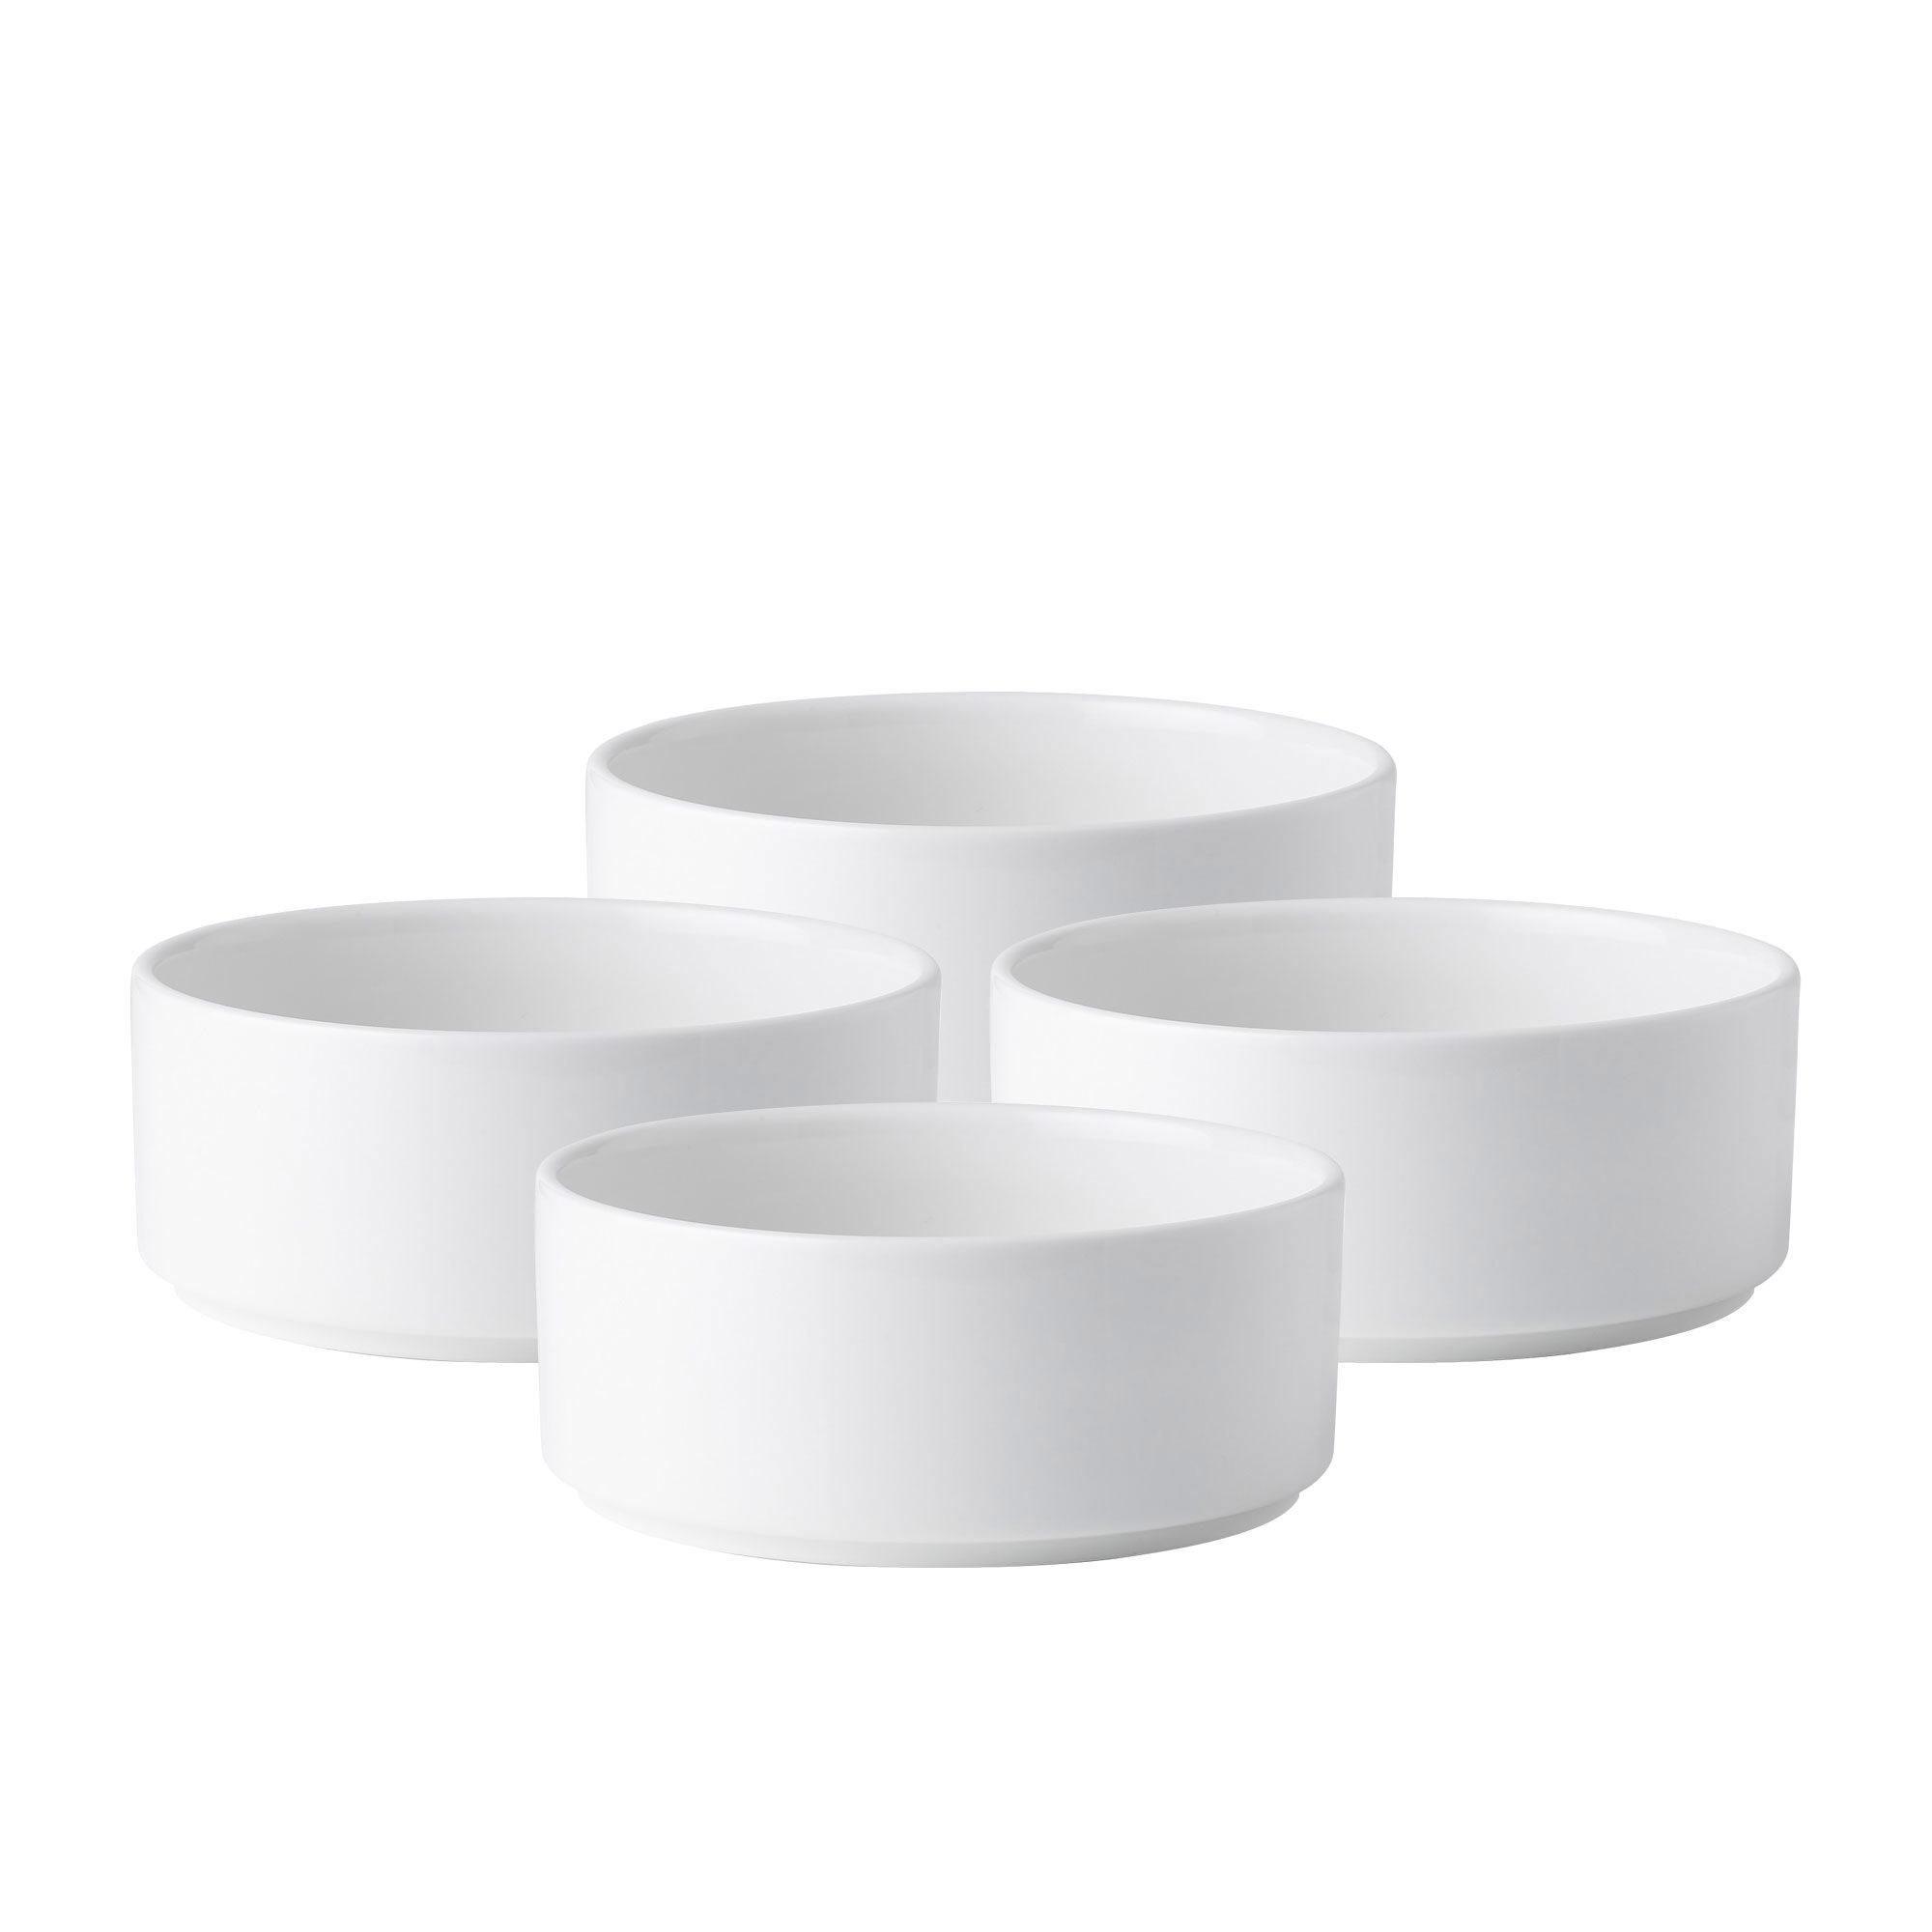 Noritake Stax White Cereal Bowl Set of 4 Image 1